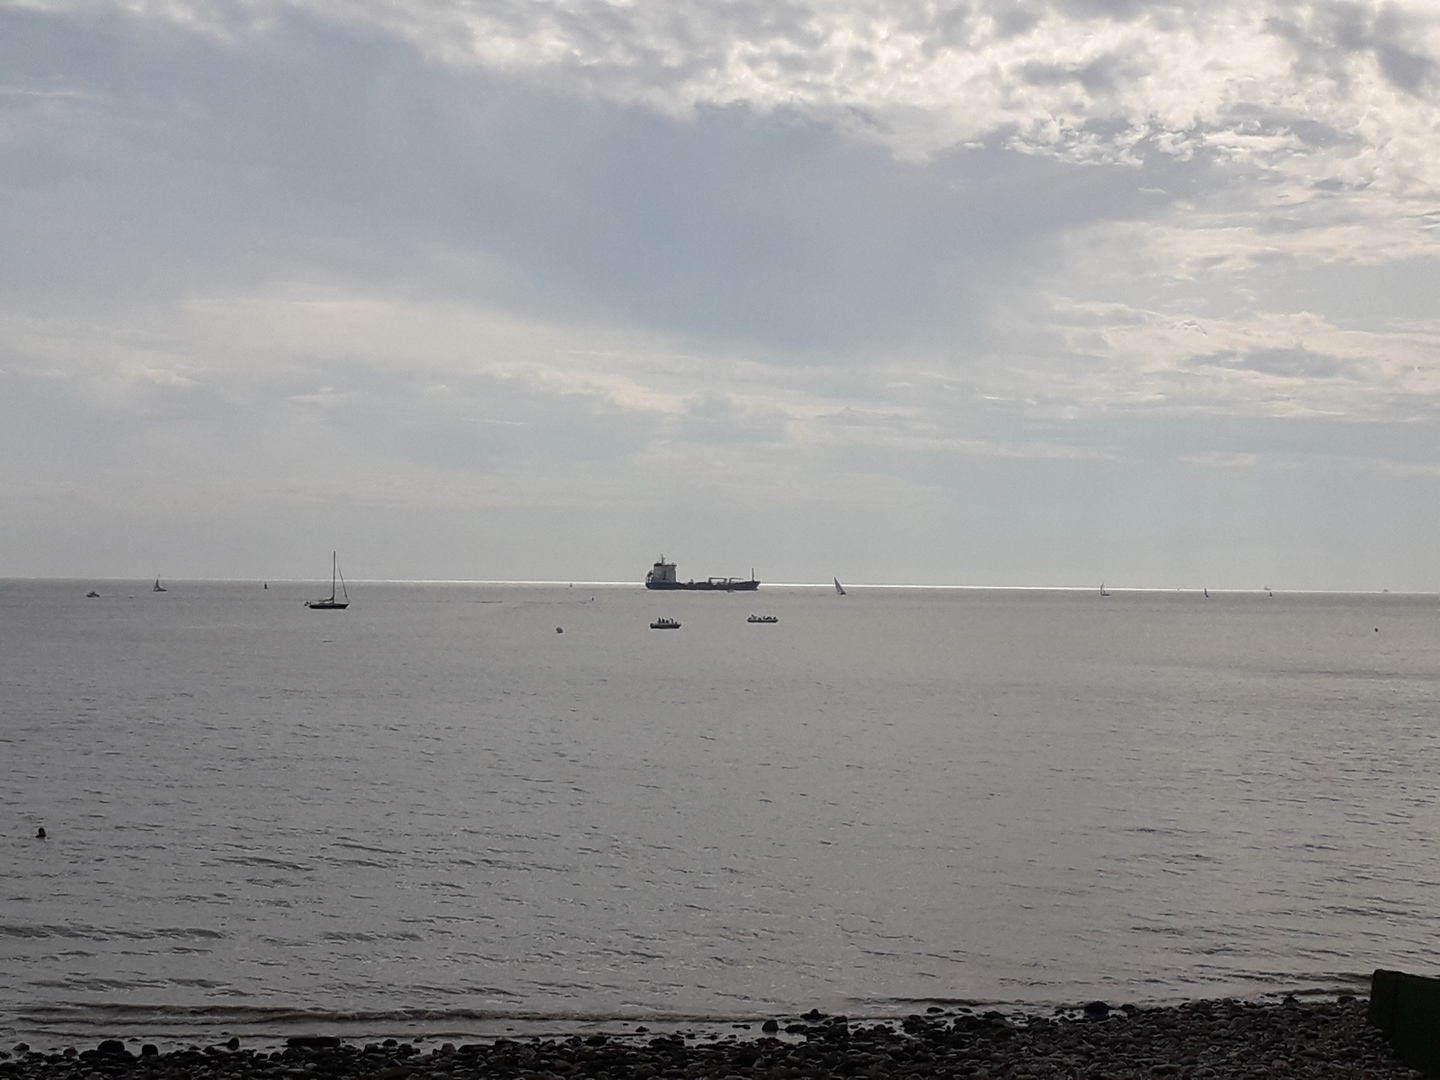 Vue sur mer avec porte-container et bateaux au loin